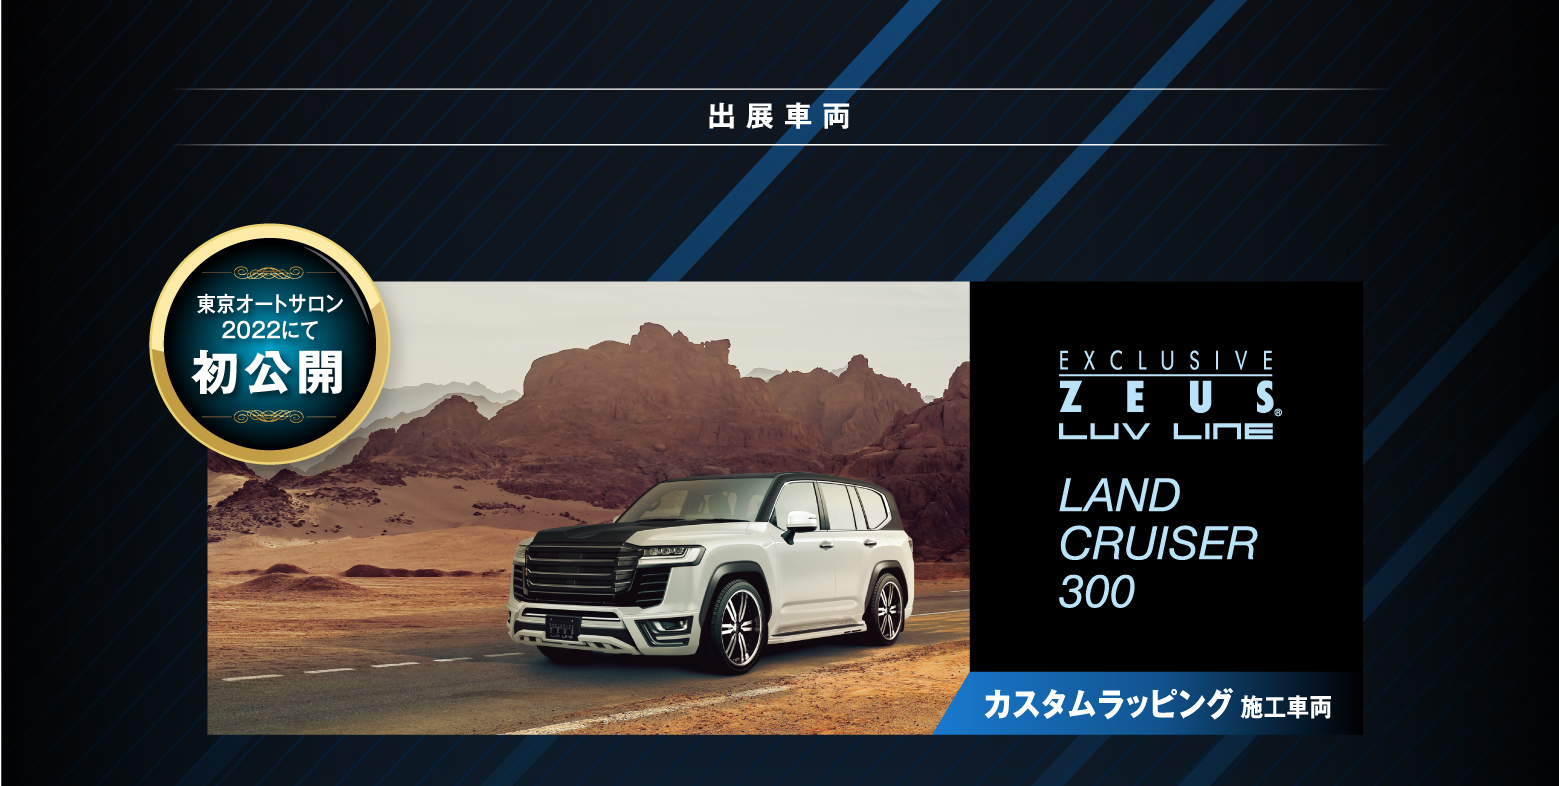 出展車両 東京オートサロン2022にて初公開 EXCLUSIVE ZEUS LUV LINE LAND CRUISER 300 カスタムラッピング施工車両